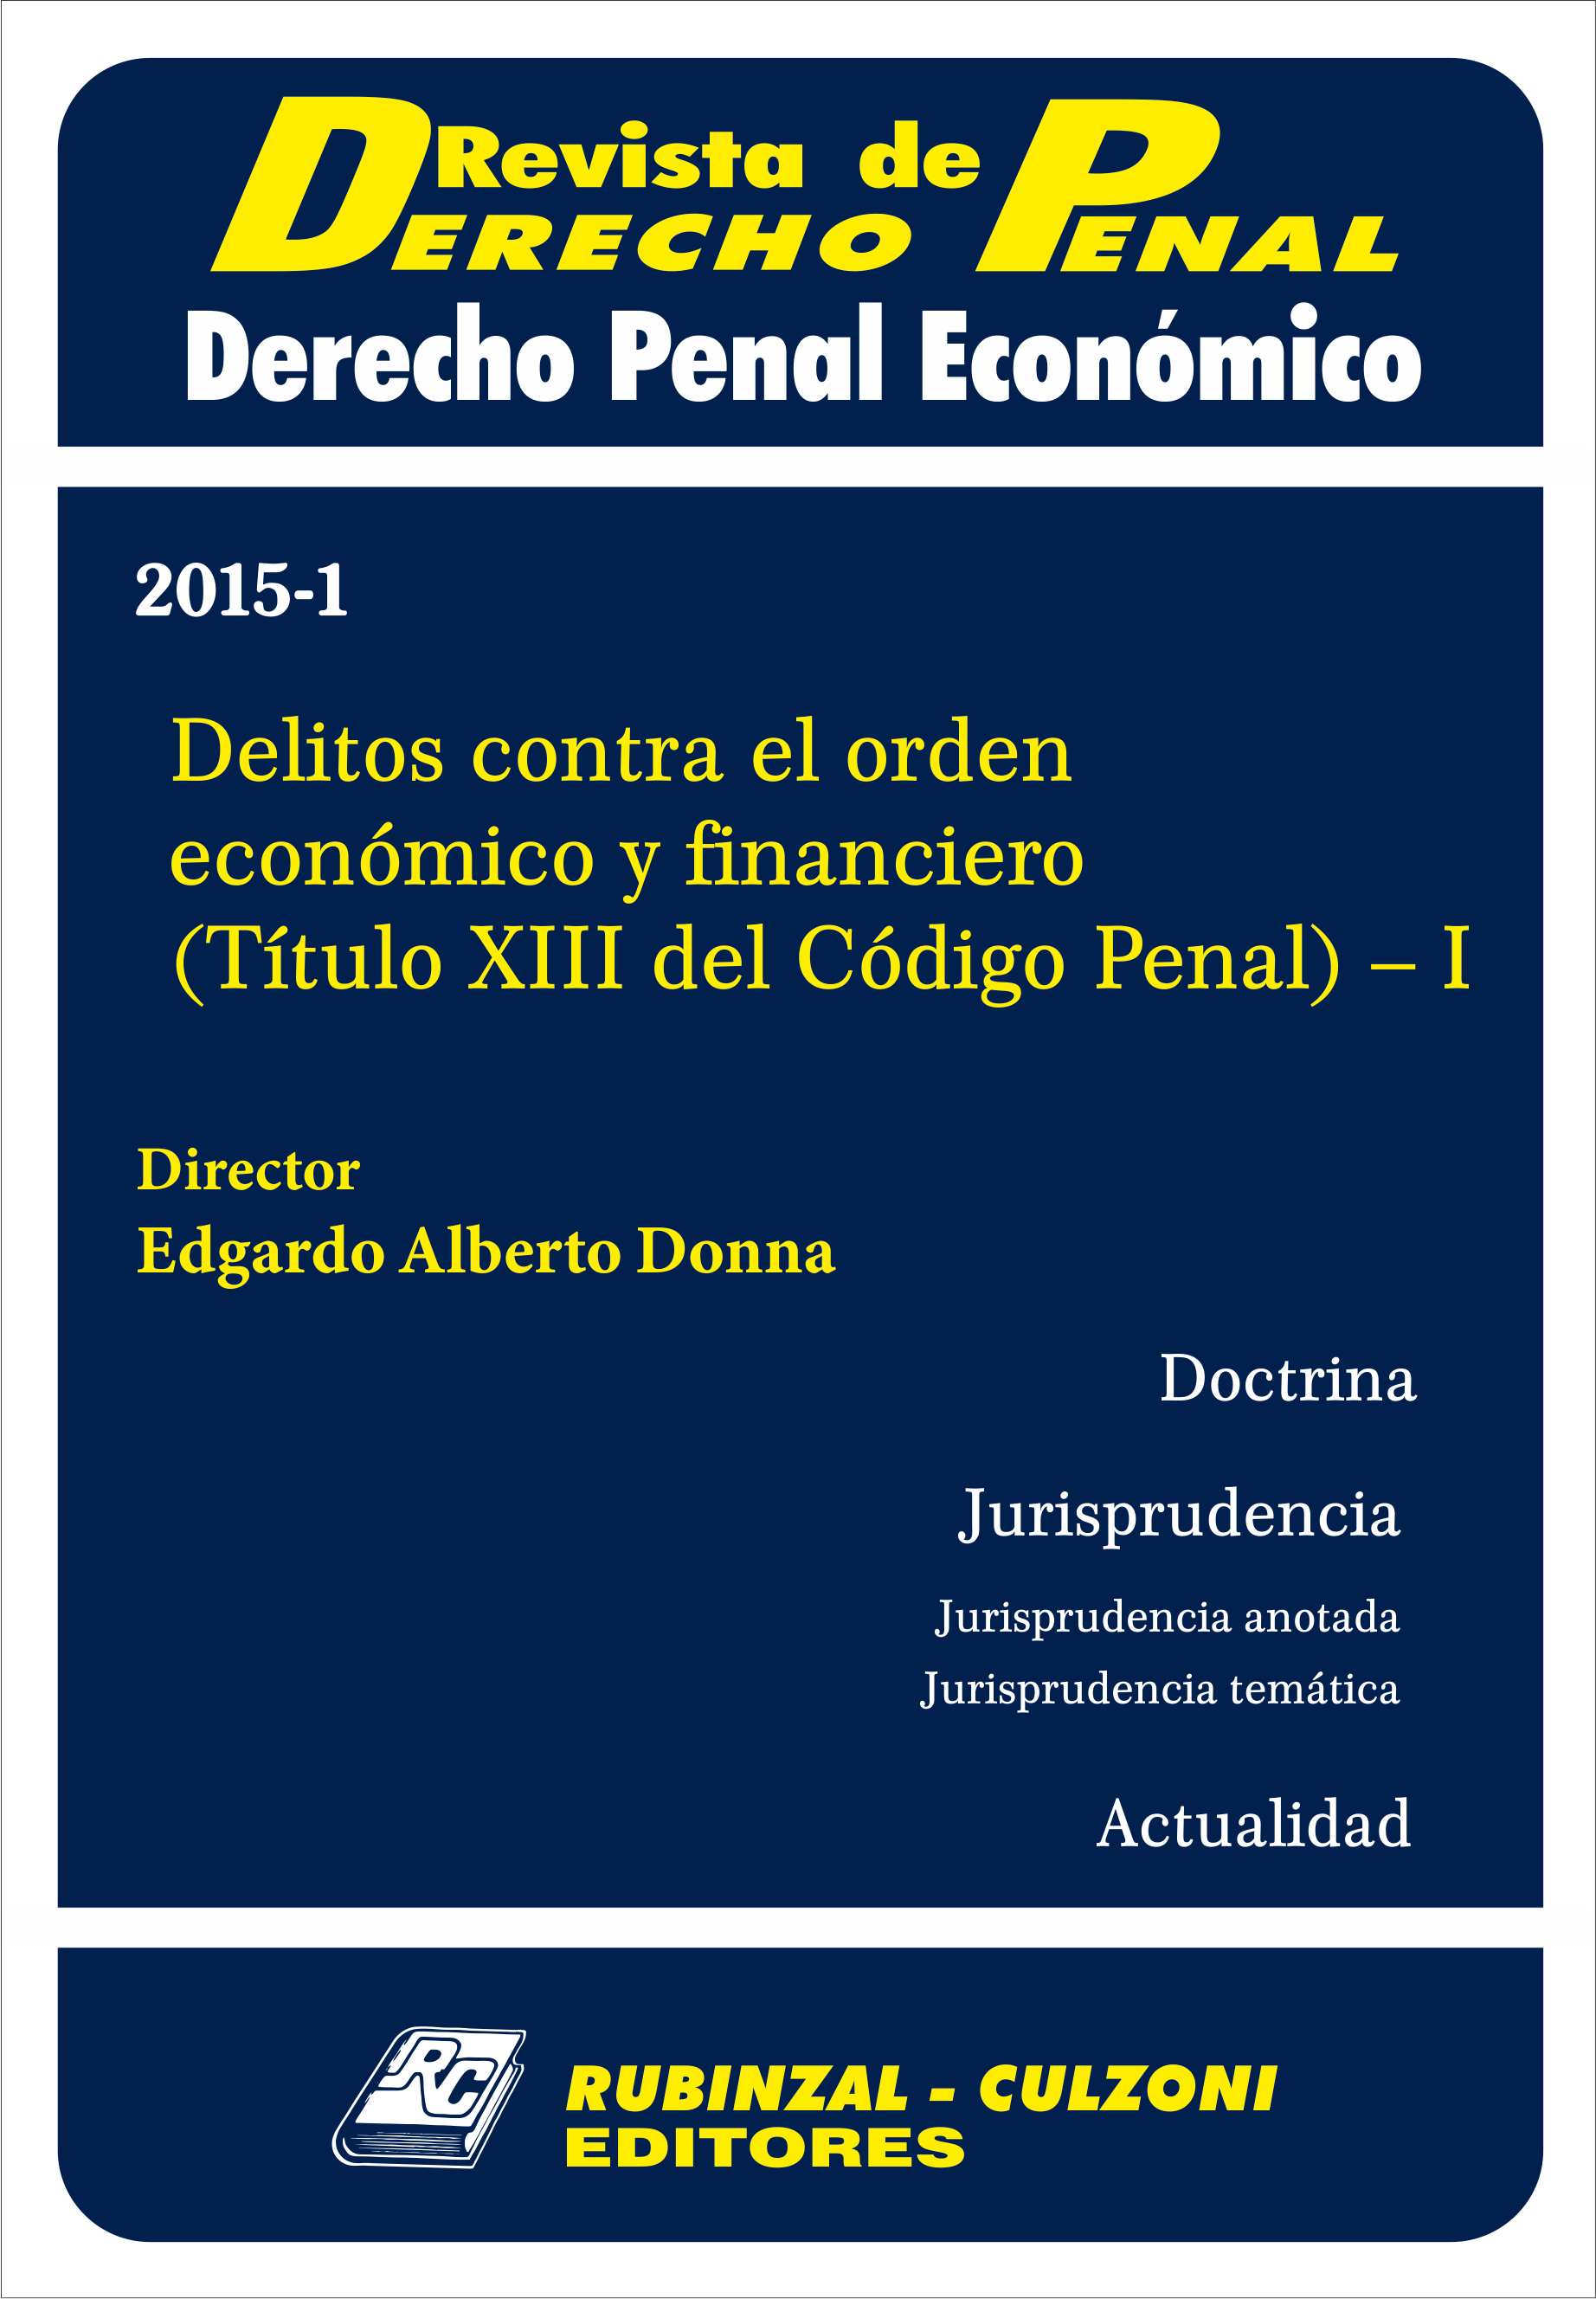 Revista de Derecho Penal Económico - Delitos contra el orden económico y financiero 